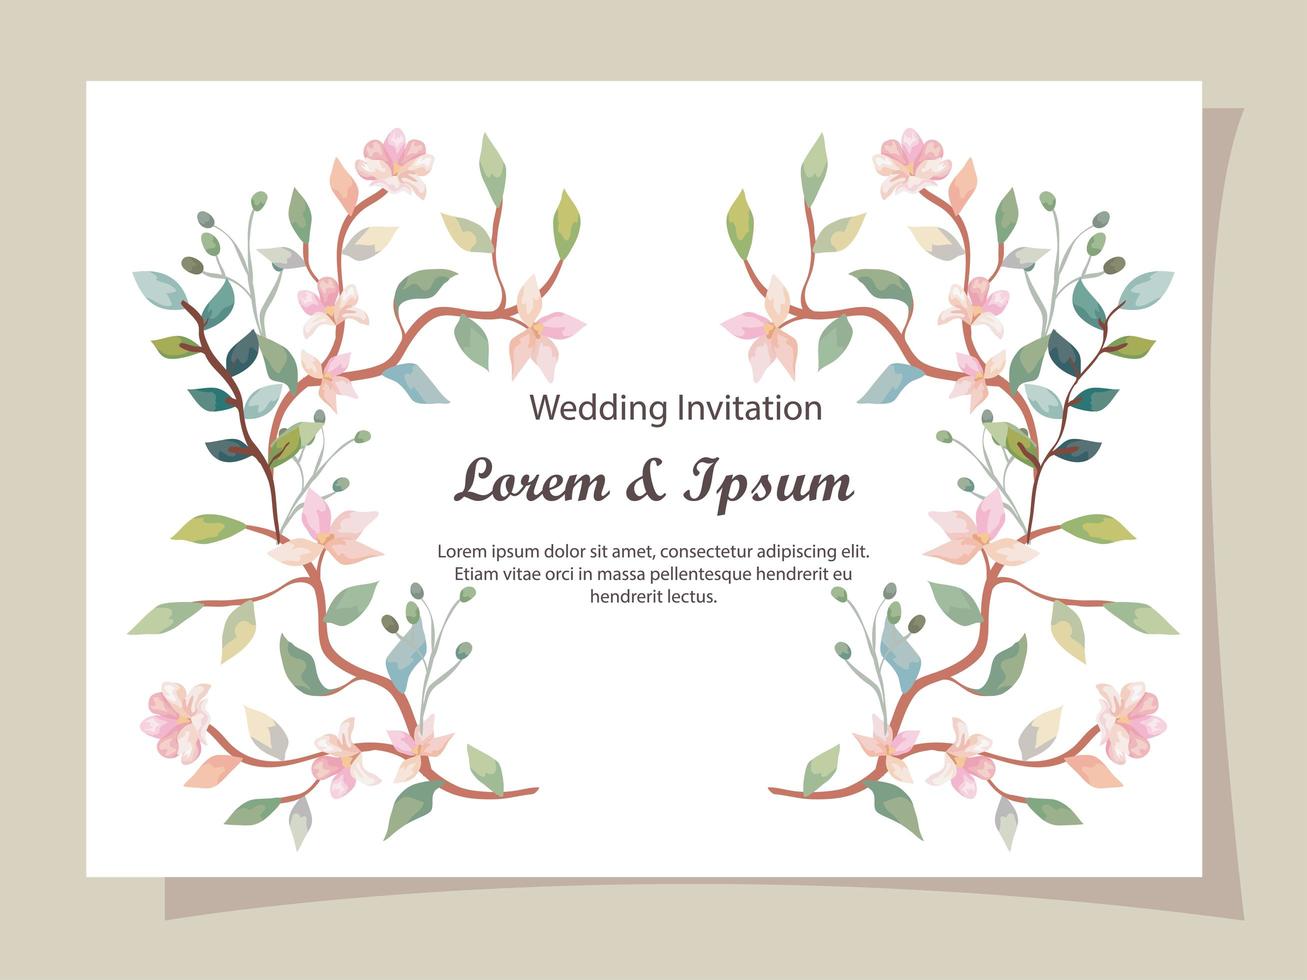 Tarjeta de invitación de boda con decoración de ramas y flores. vector